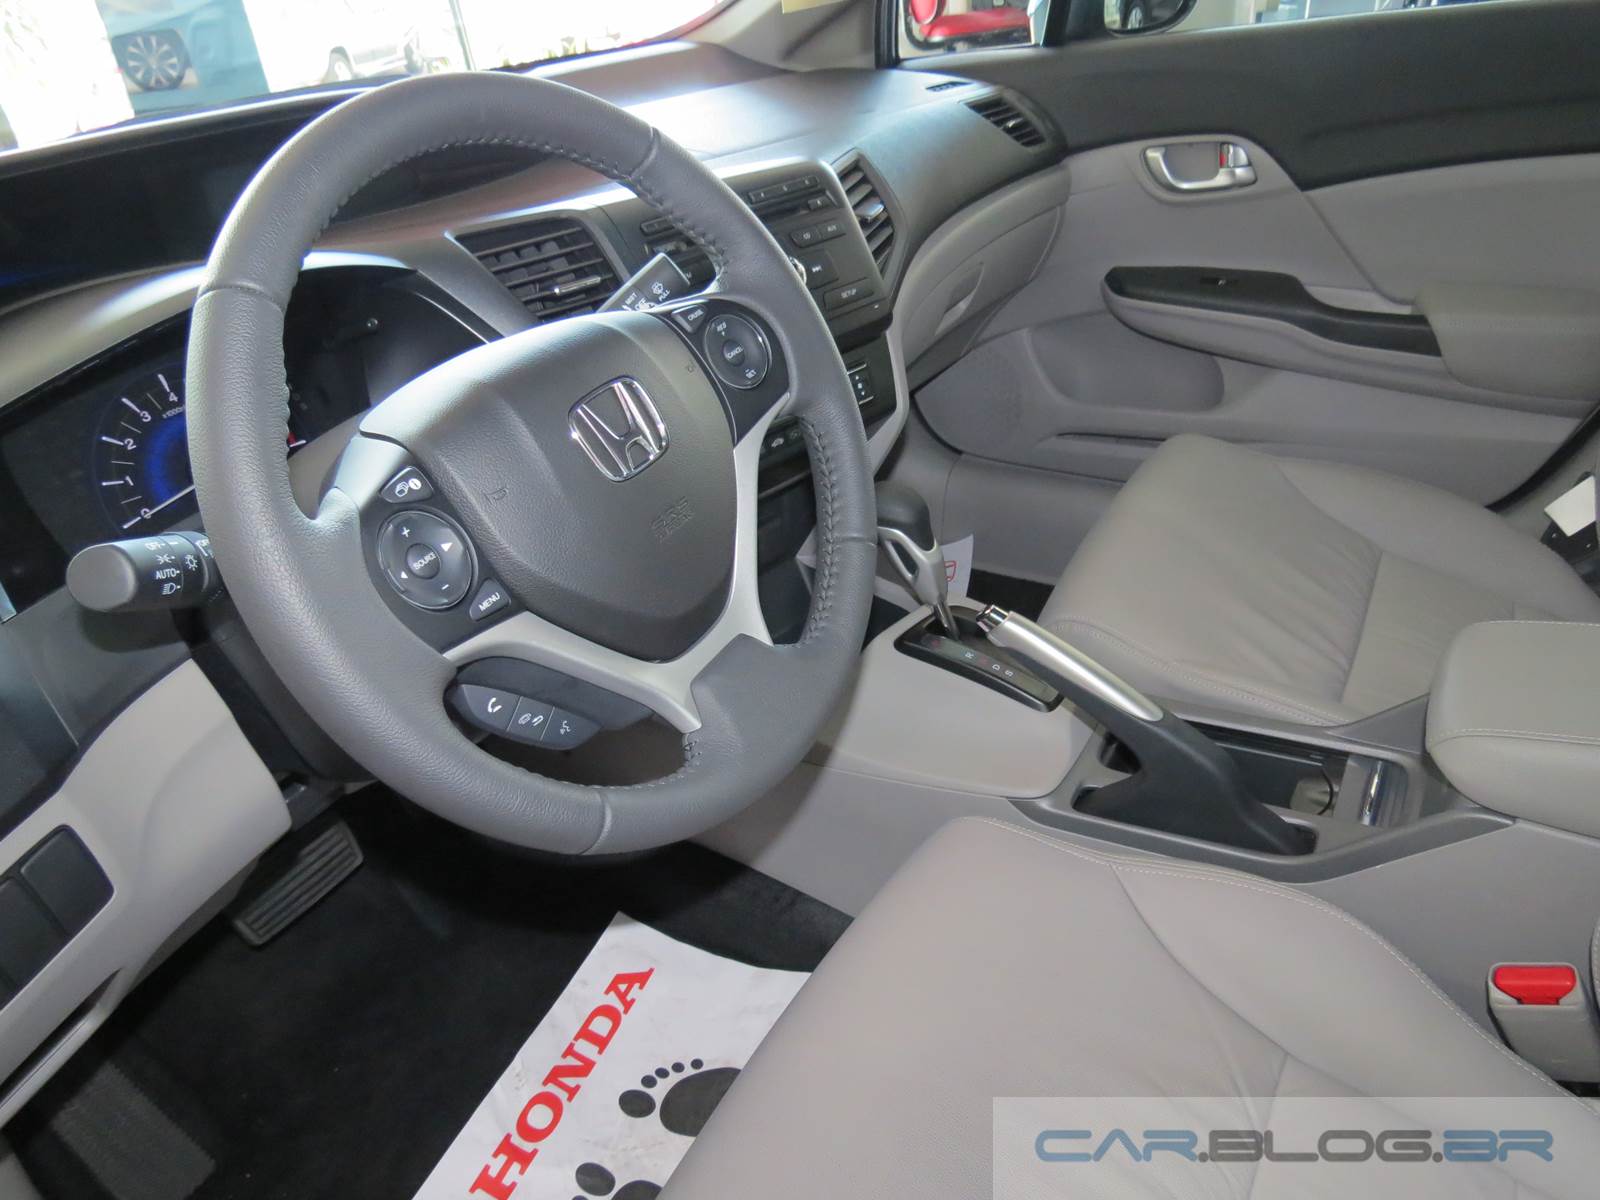 Honda Civic LXR 2.0 2015 - interior